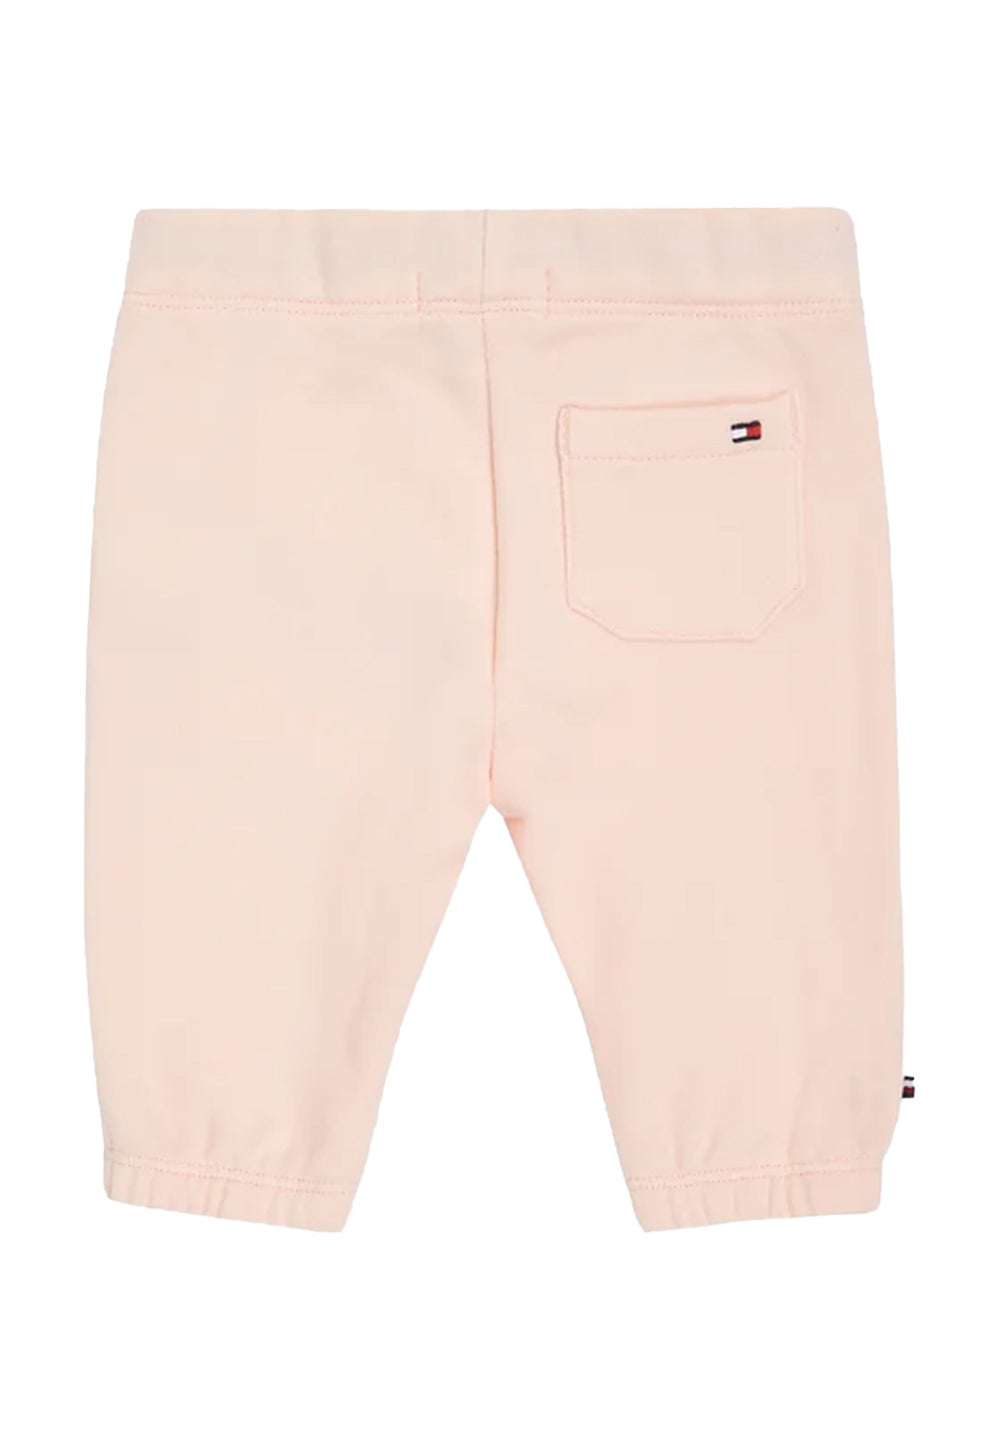 Pantalone felpa rosa per neonata